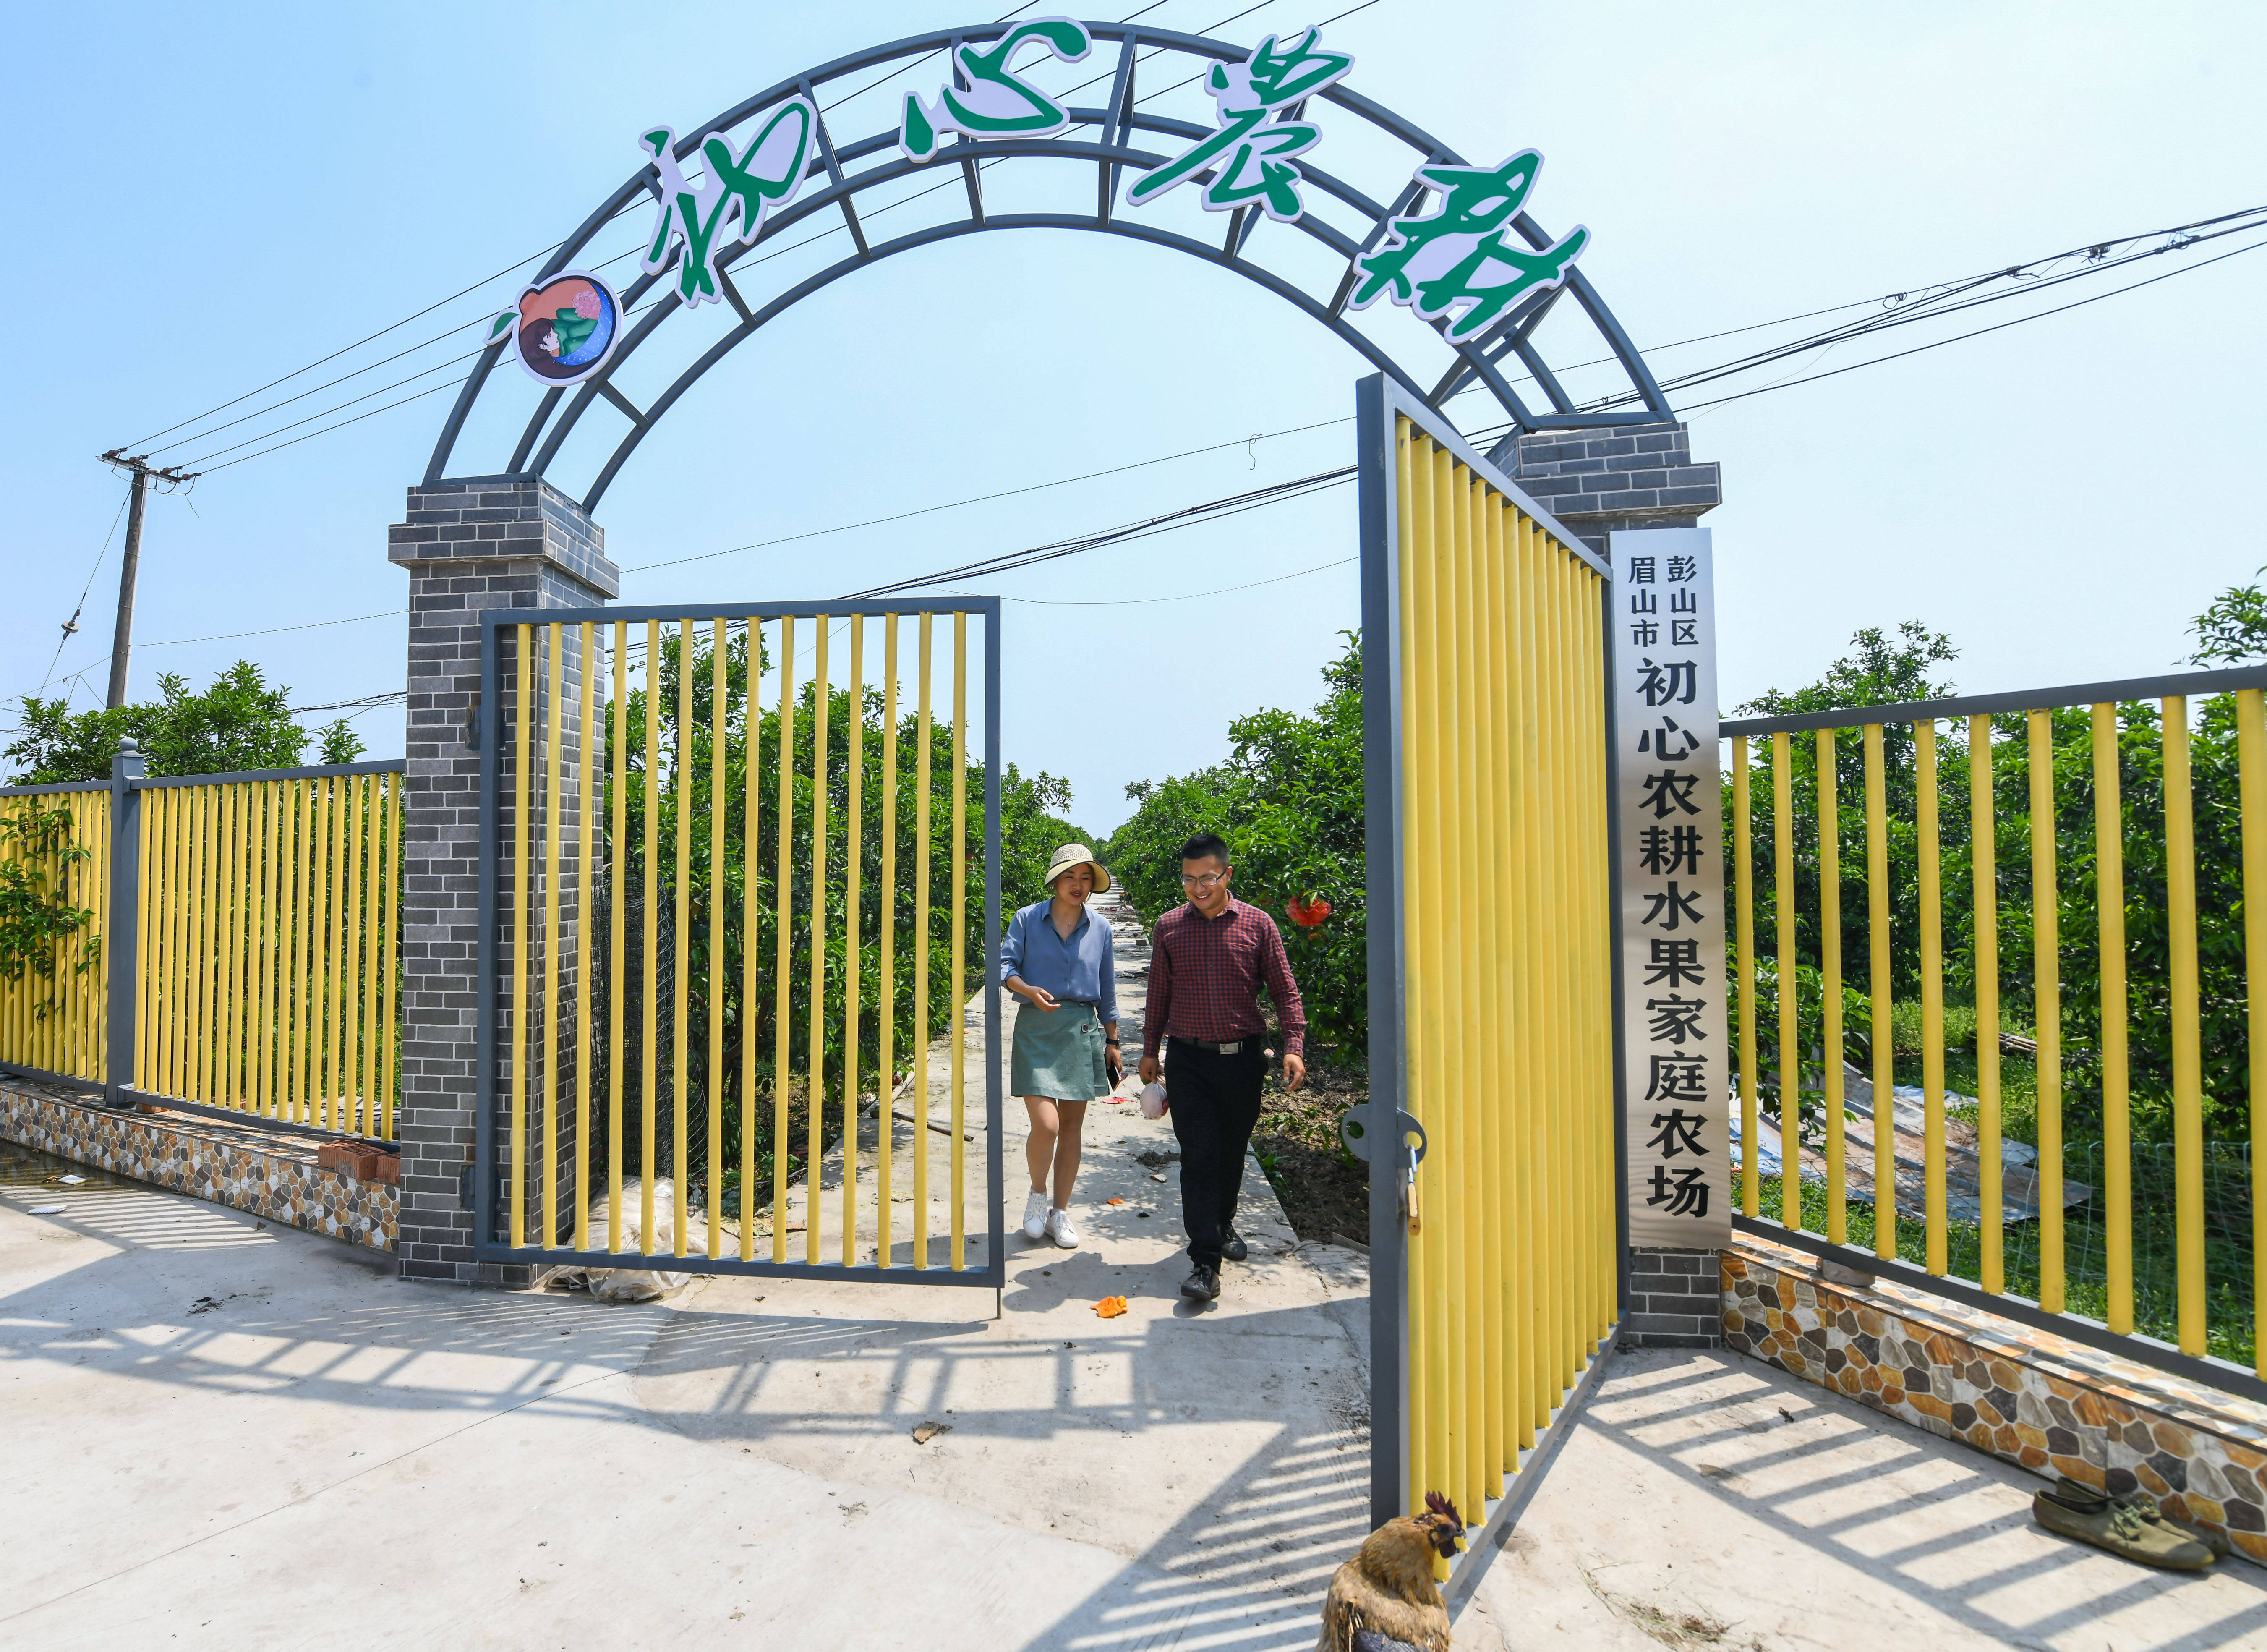 4月30日,在四川省彭山区公义镇,刘沈厅(右)和家庭农场主郑利彬走出